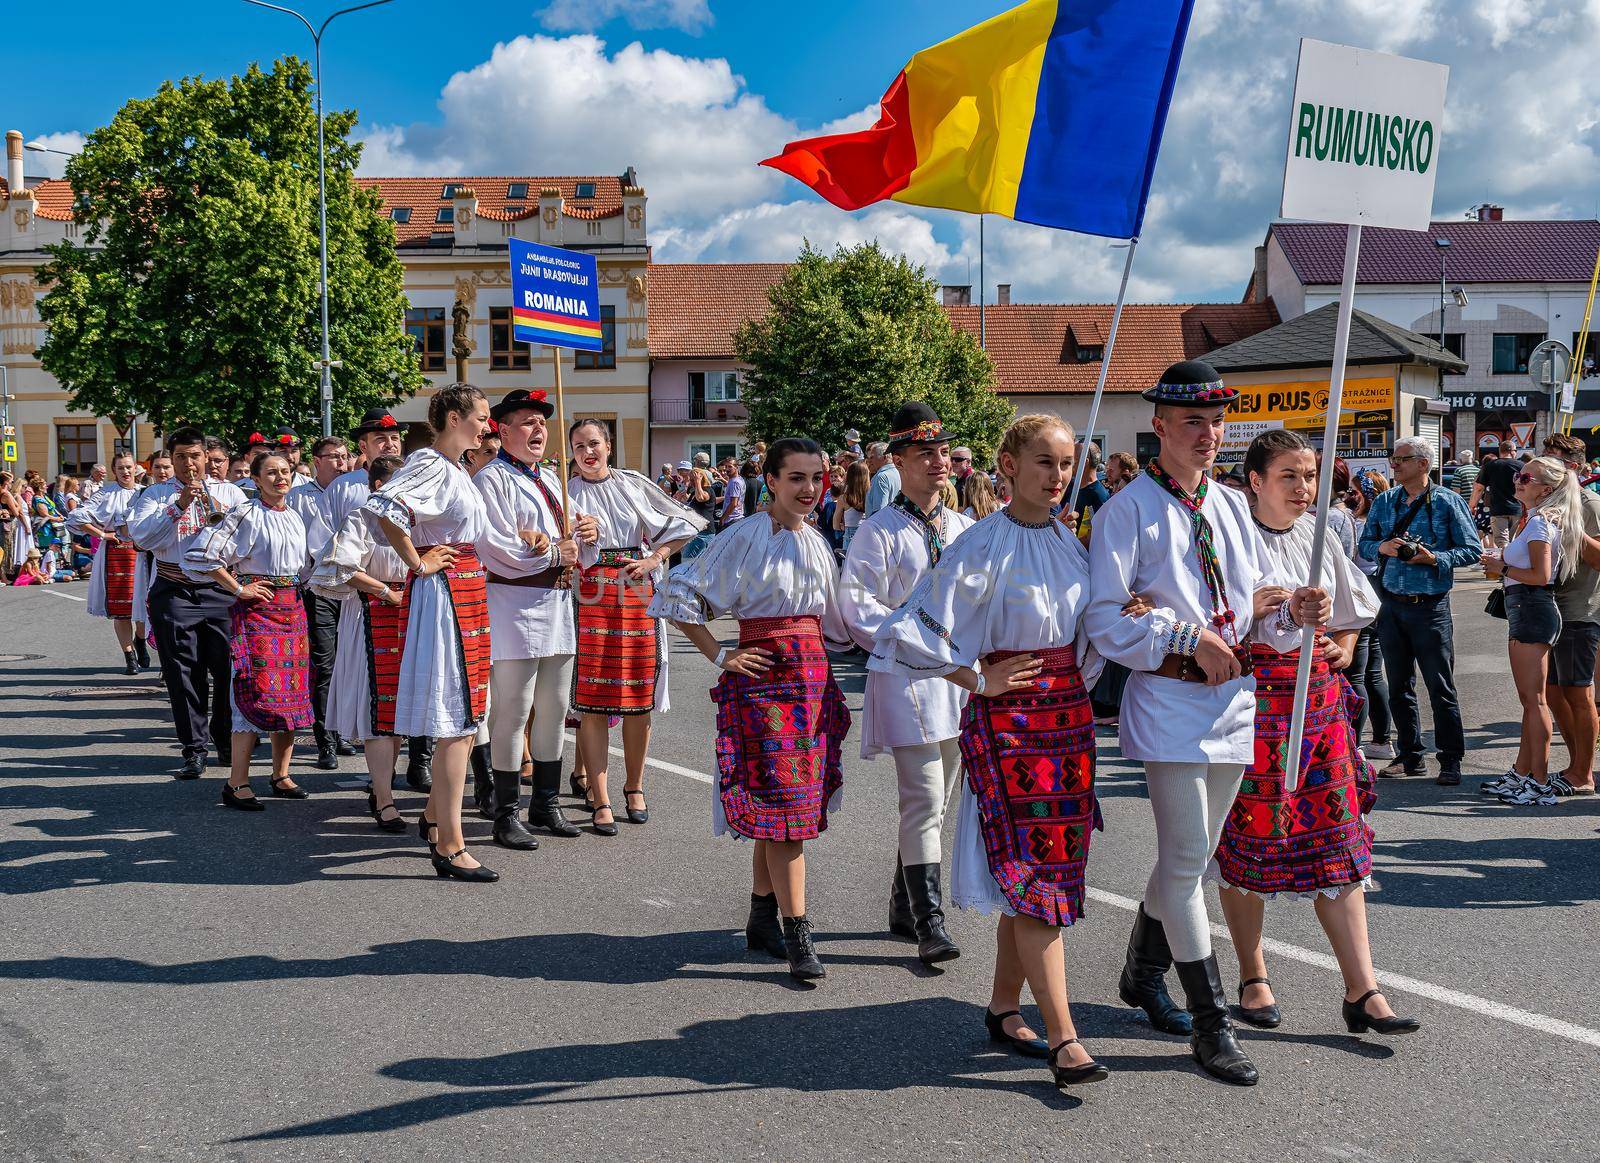 Straznice, Czech Republic - June 25, 2022 International Folklore Festival. Men and women in Romanian folk costumes